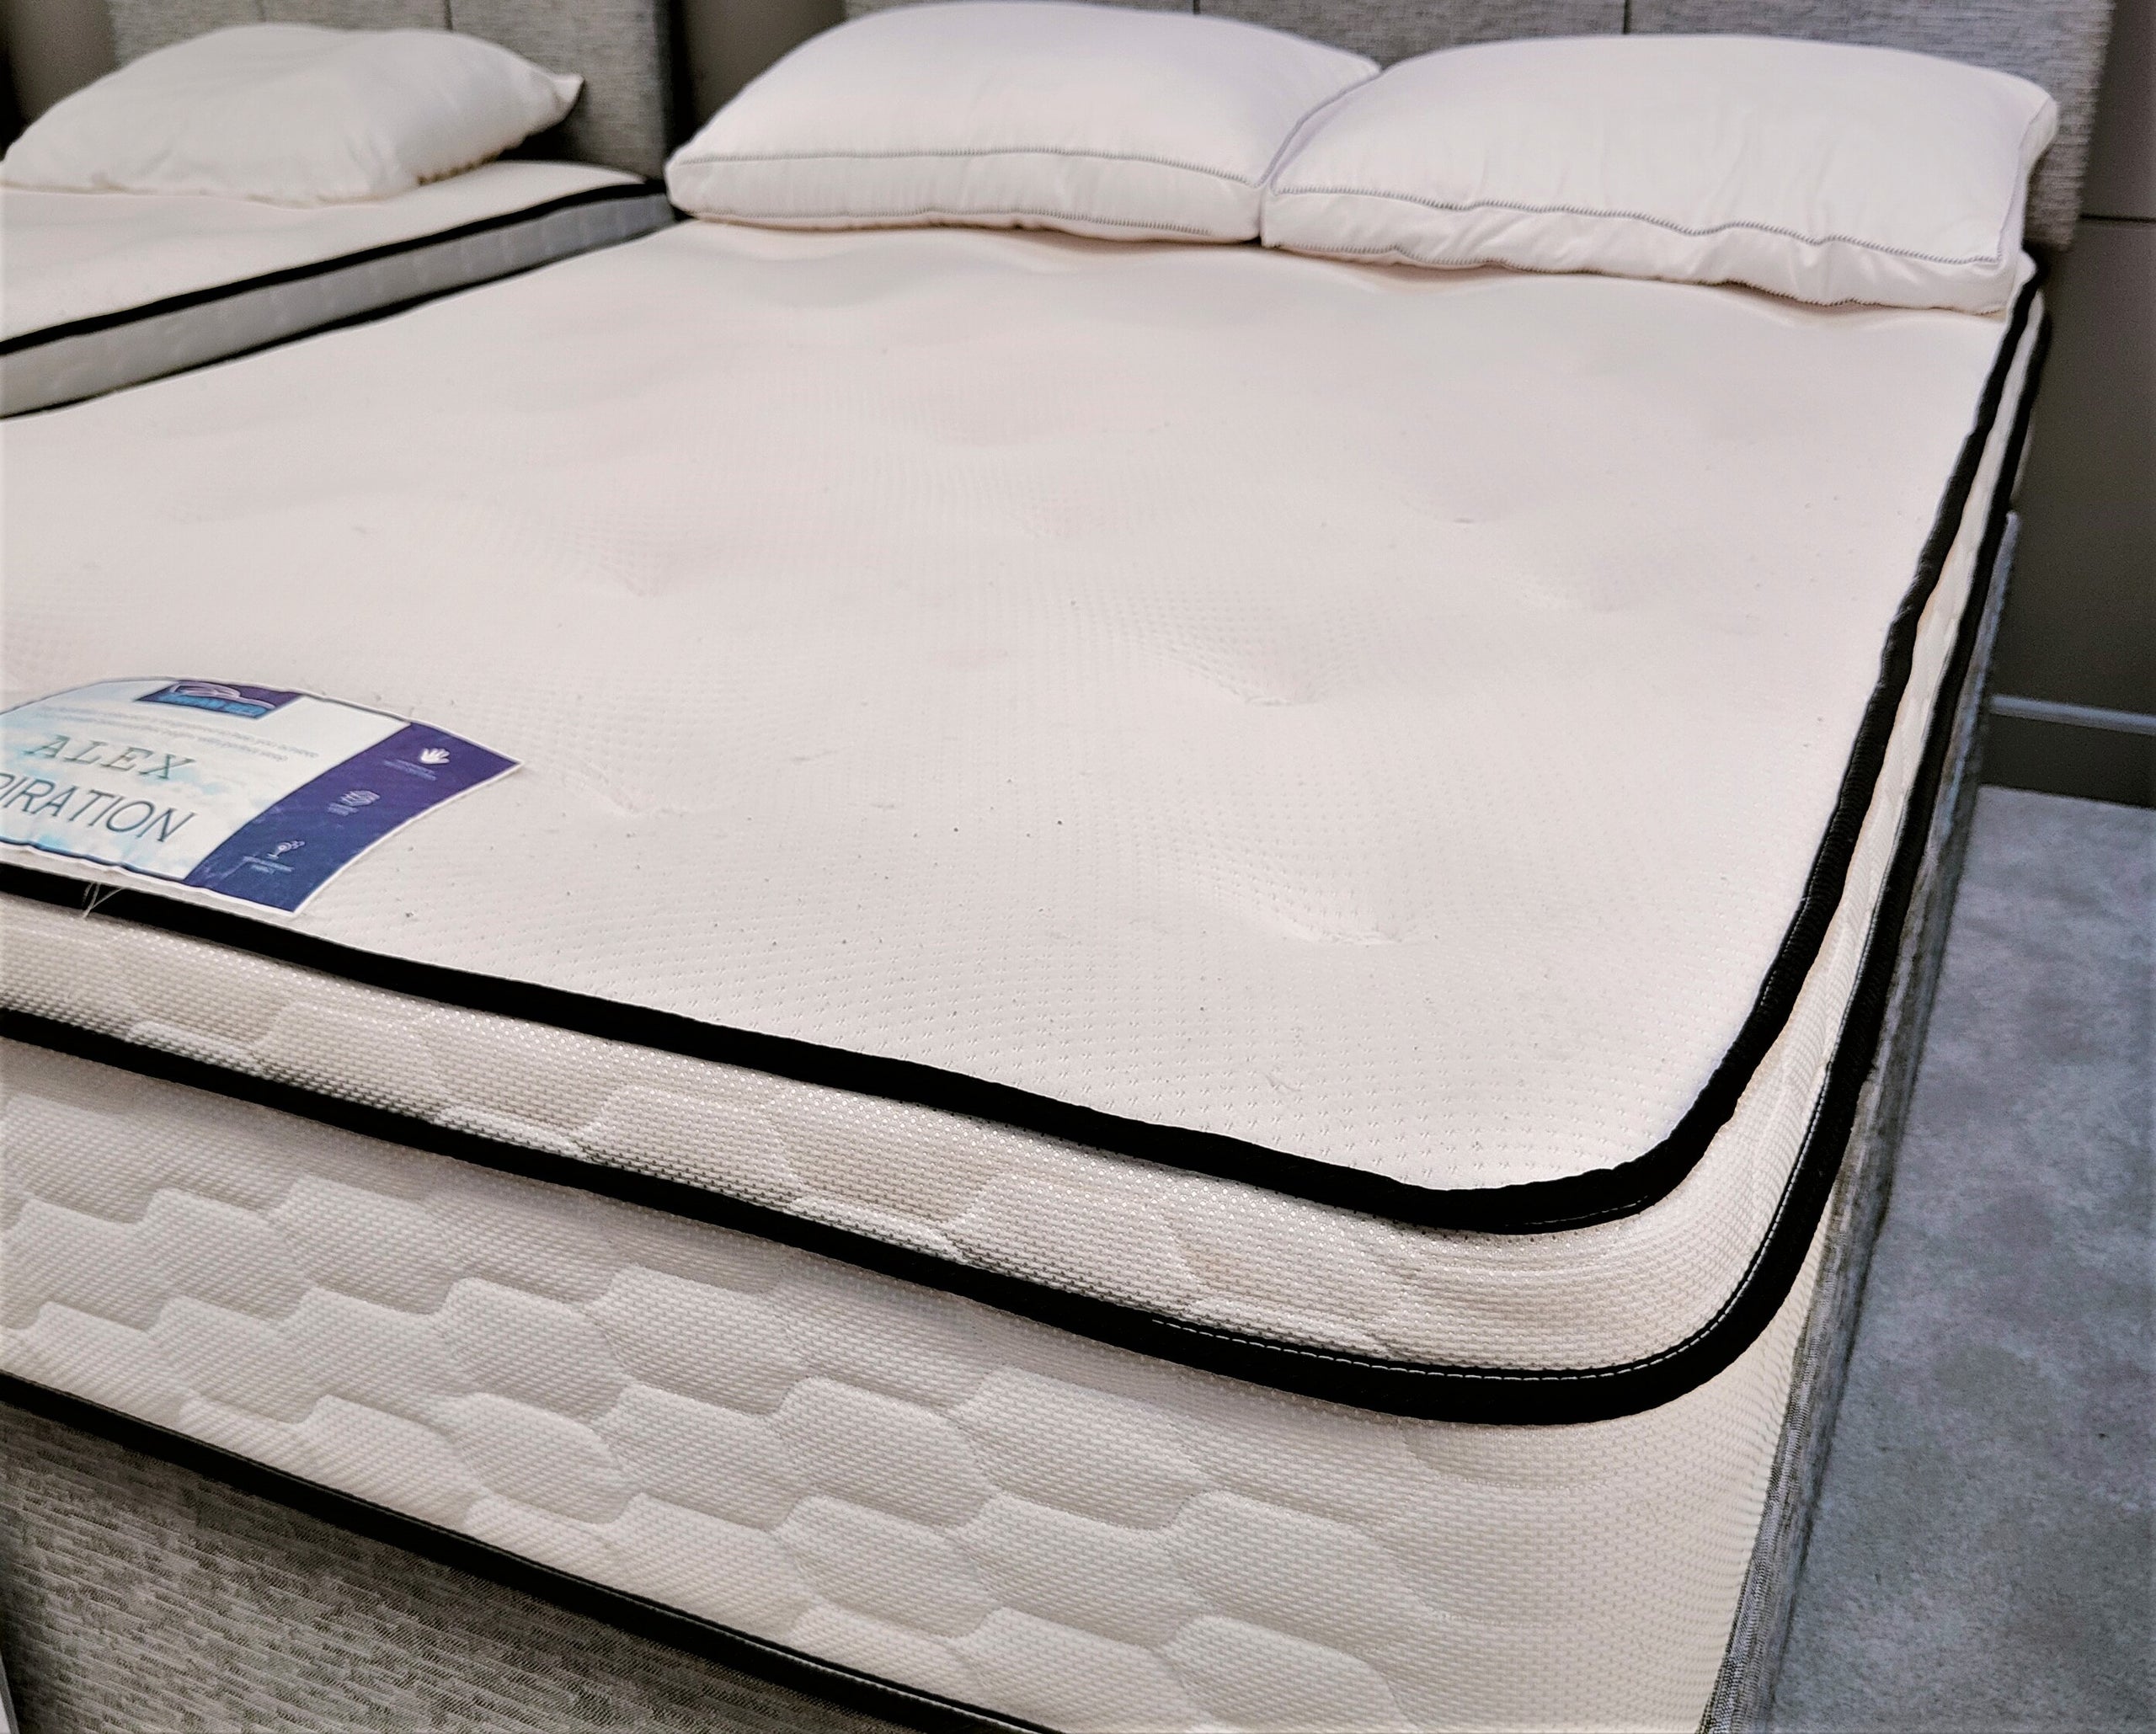 alex weiss mattress firm compensation